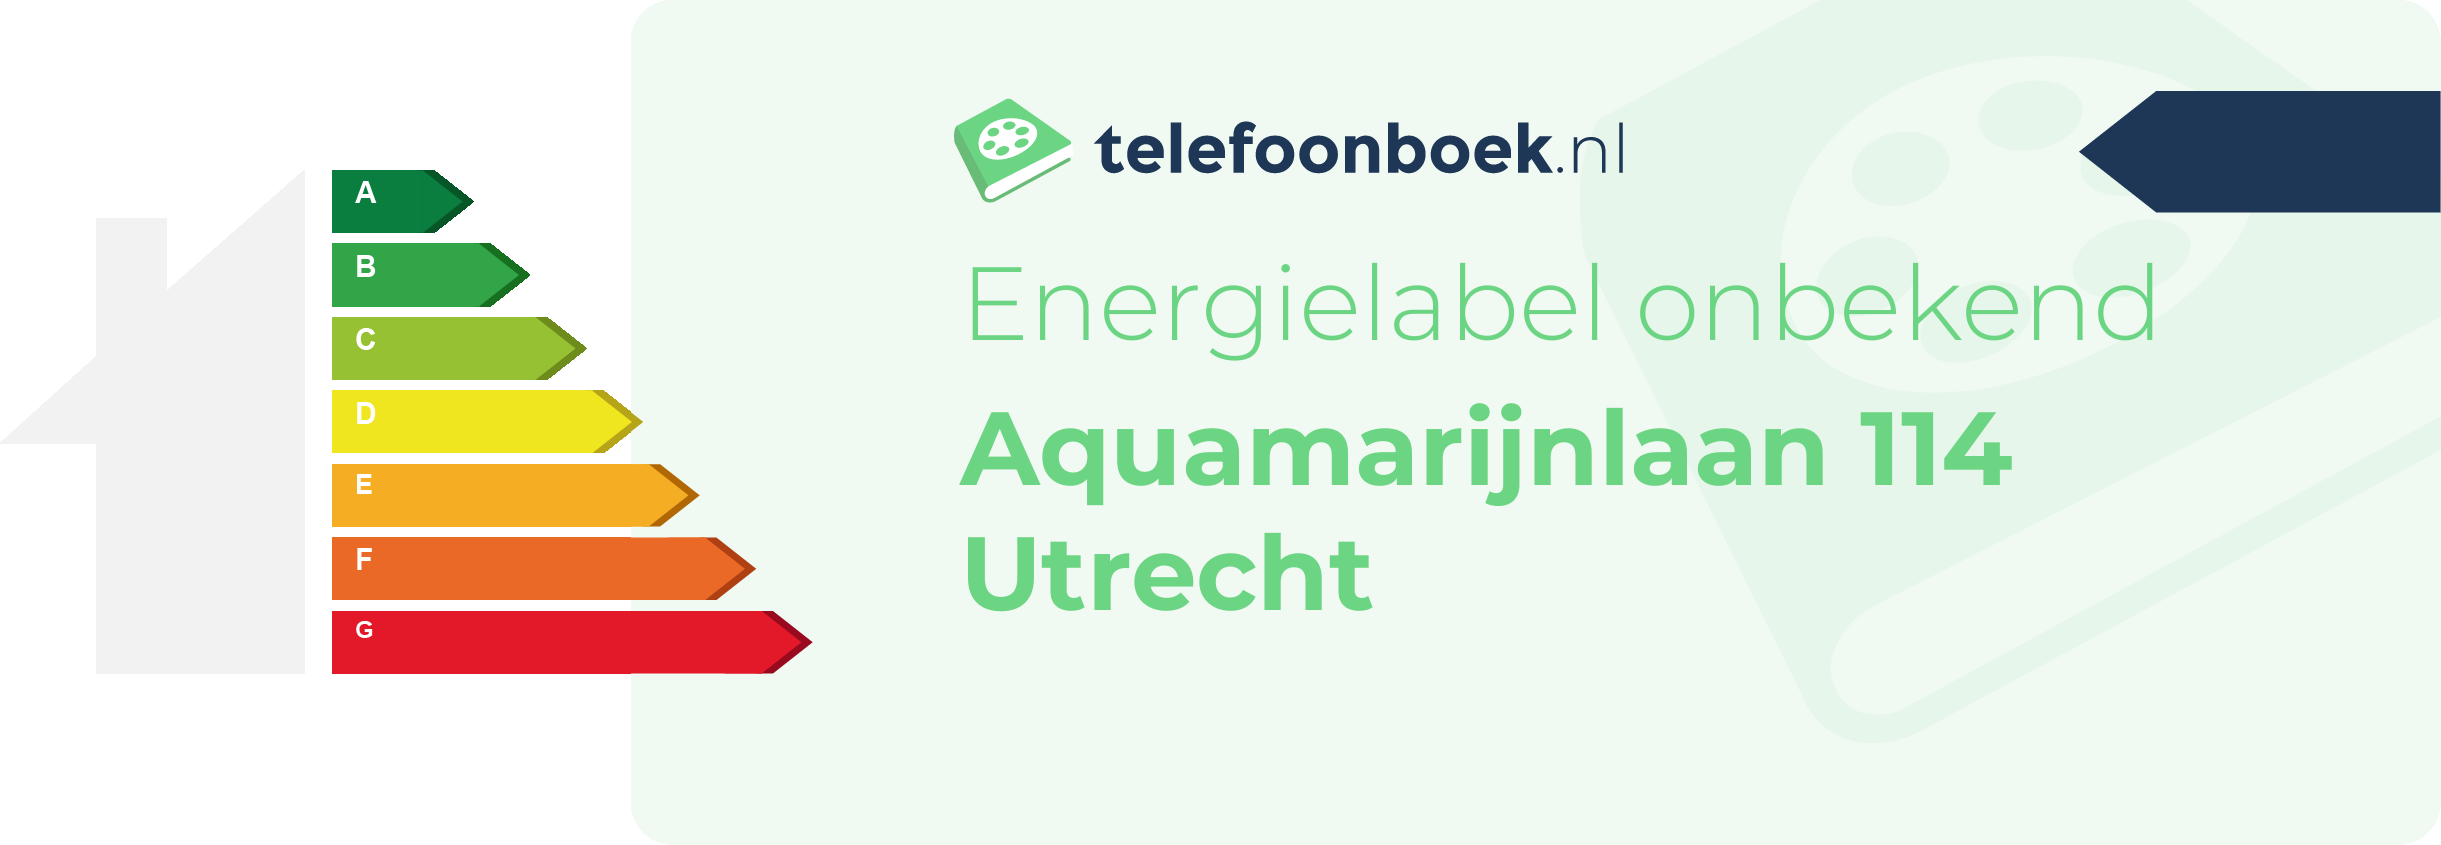 Energielabel Aquamarijnlaan 114 Utrecht